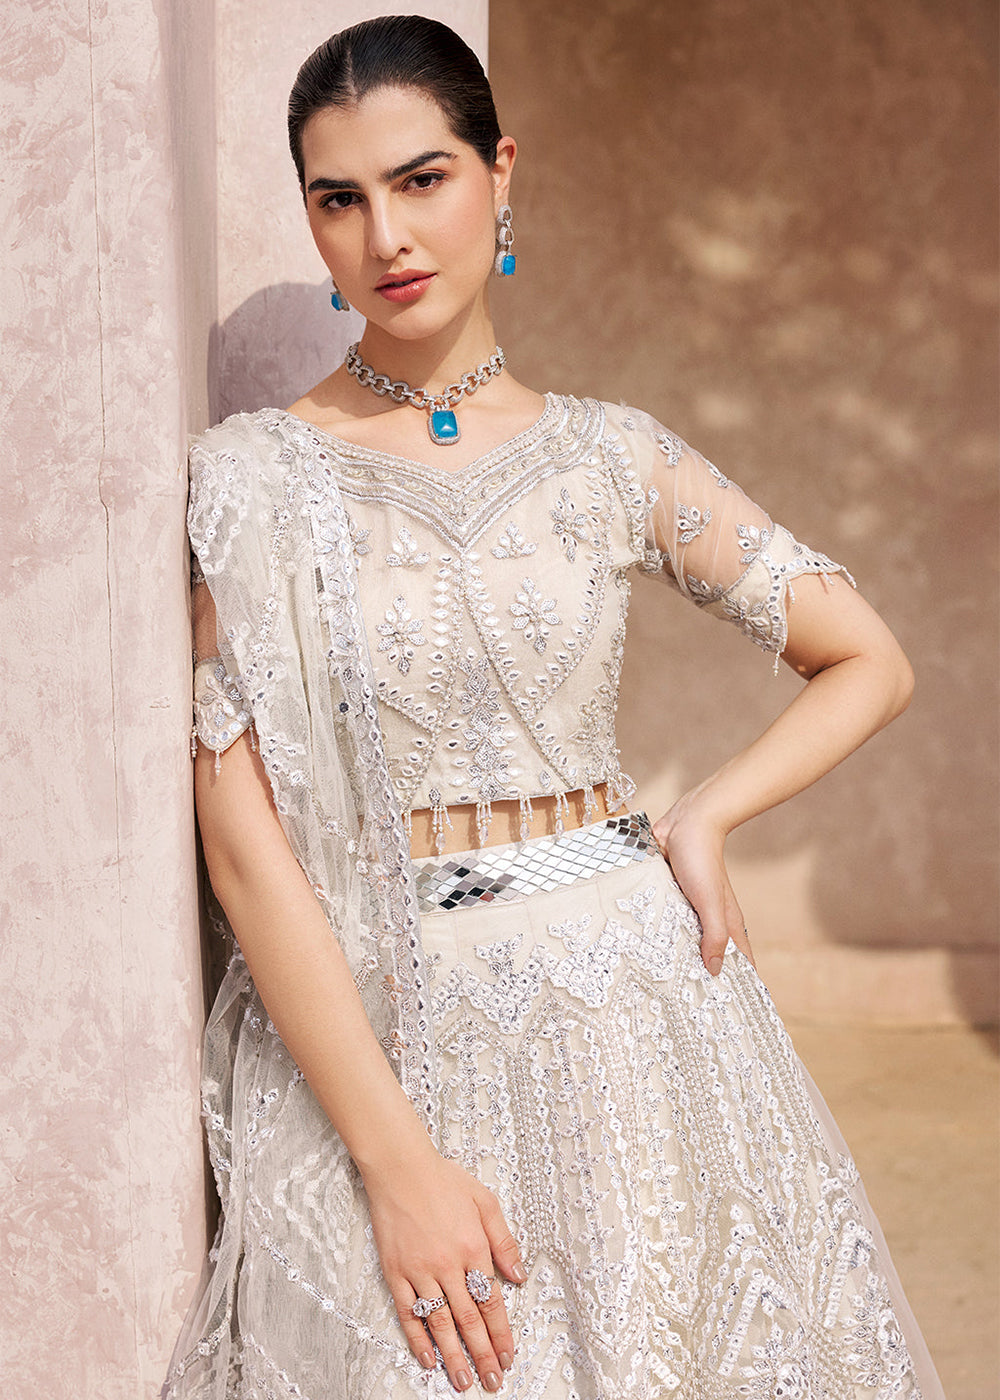 Buy Now Ivory Lehenga Choli | Emaan Adeel | Mirha Wedding Edition '23 | MH-201 Online in USA, UK, Canada & Worldwide at Empress Clothing.